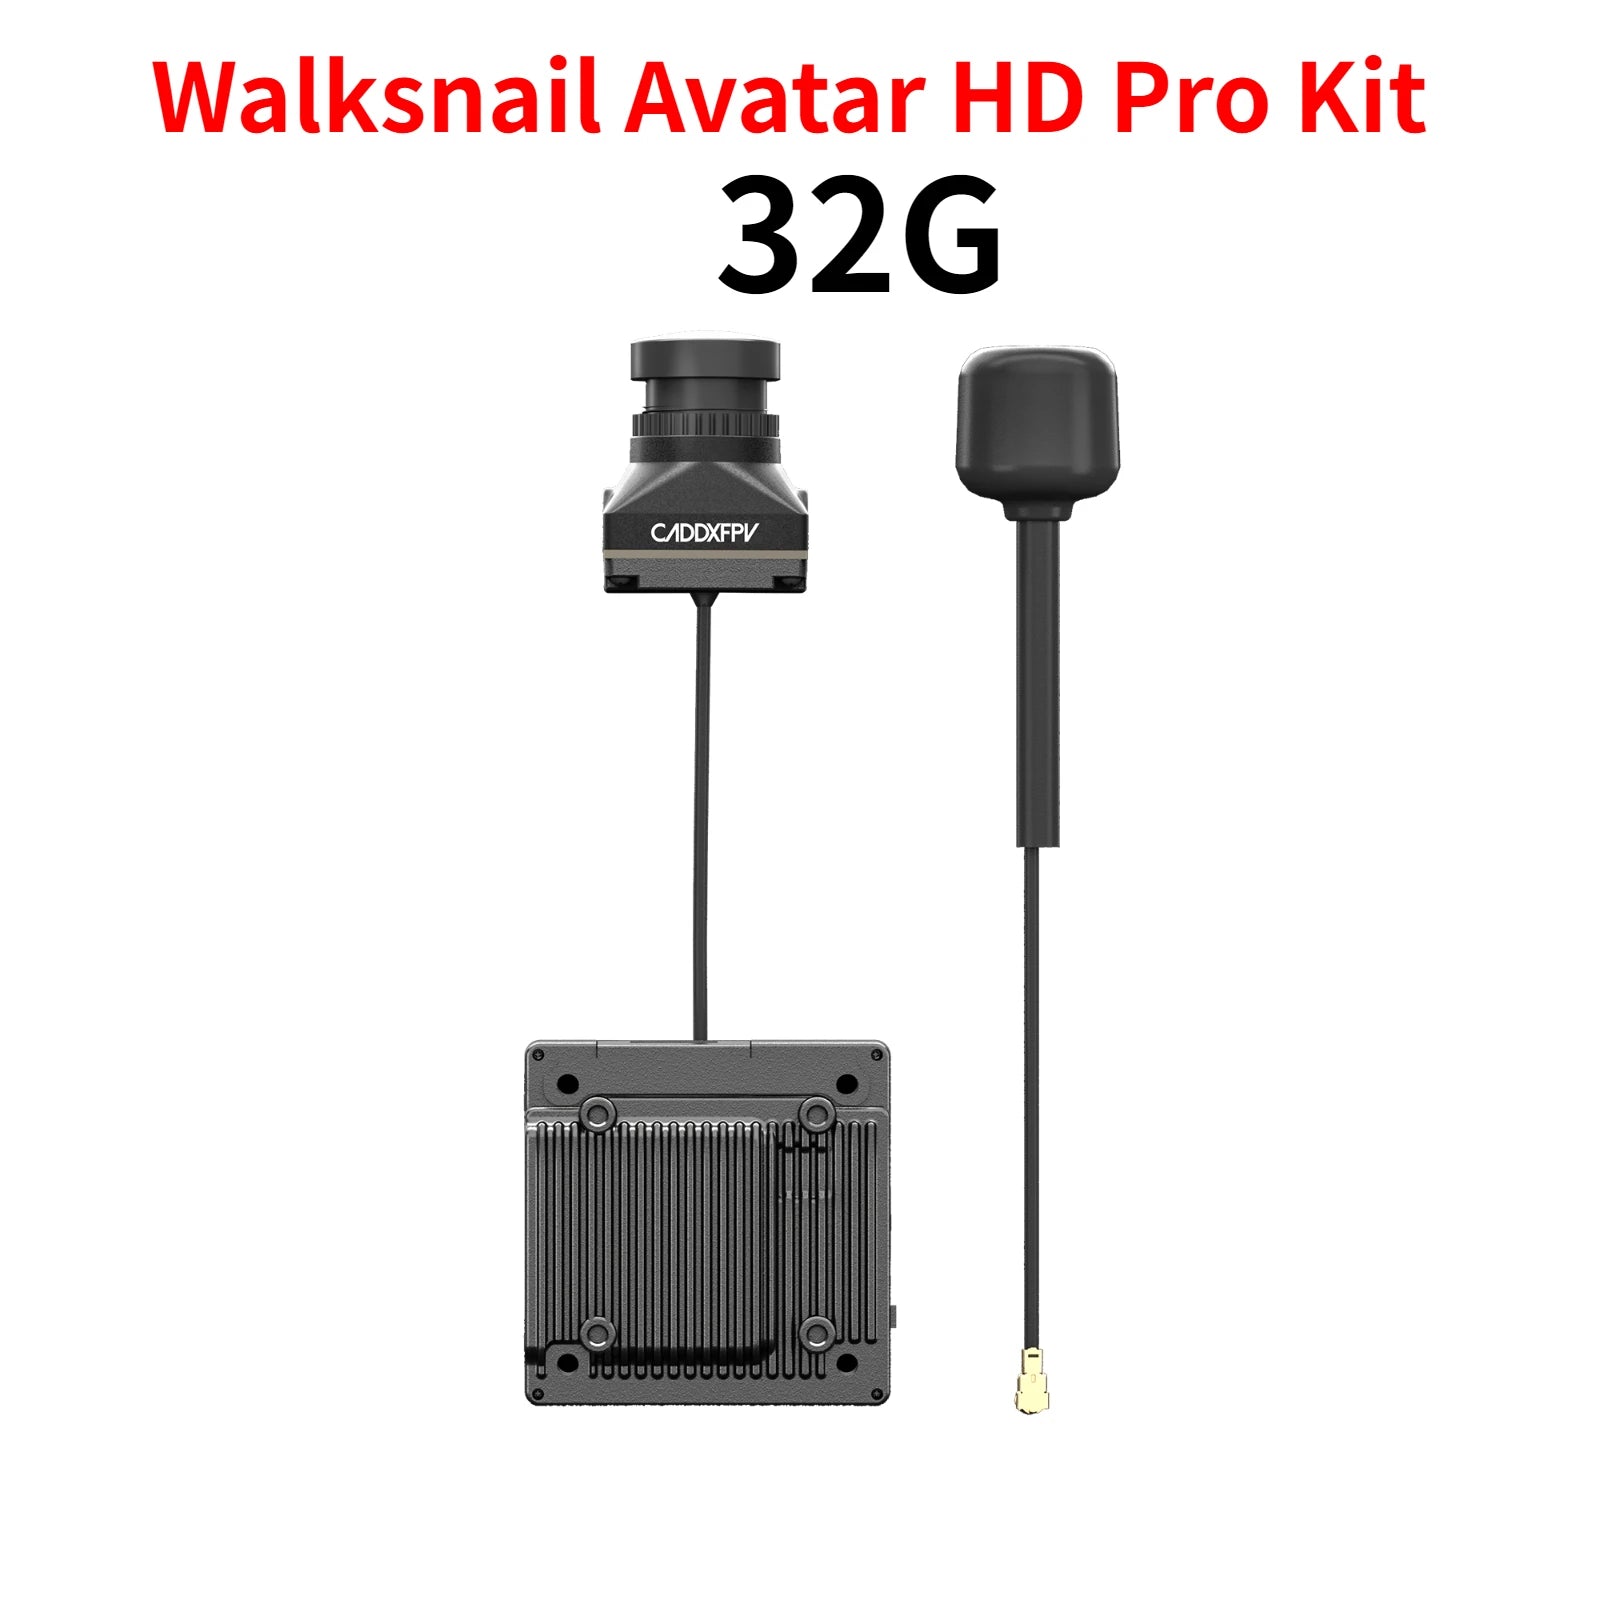 Walksnail Avatar HD Pro Kit 326 CADDXFPV B